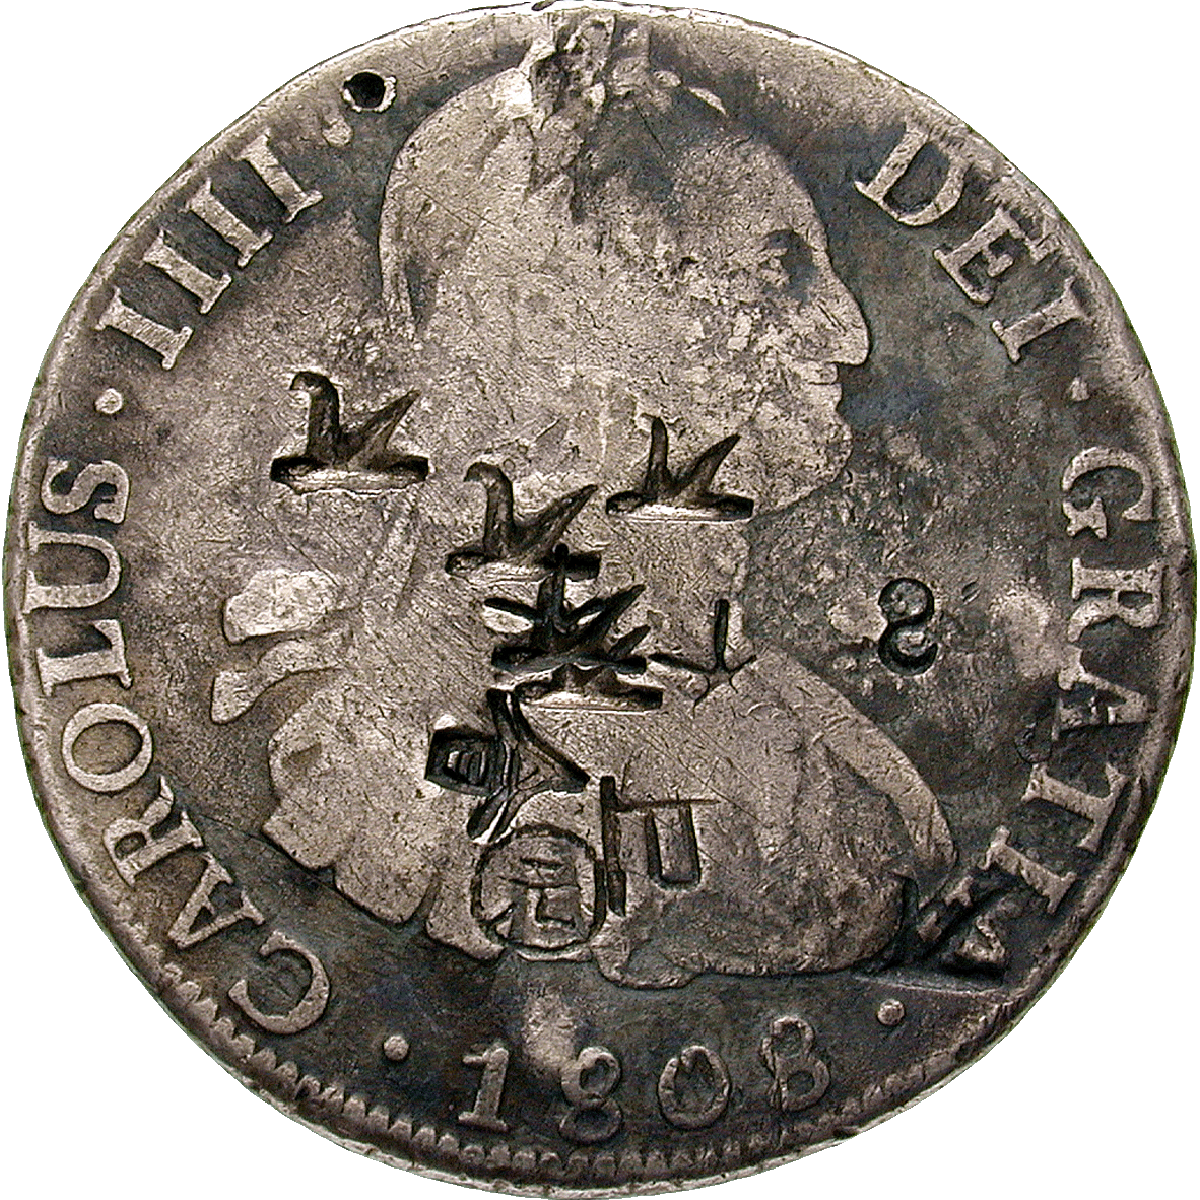 Kaiserreich China, Karl III. von Spanien, Real de a ocho (Peso) 1808 mit chinesischen Gegenstempeln (obverse)